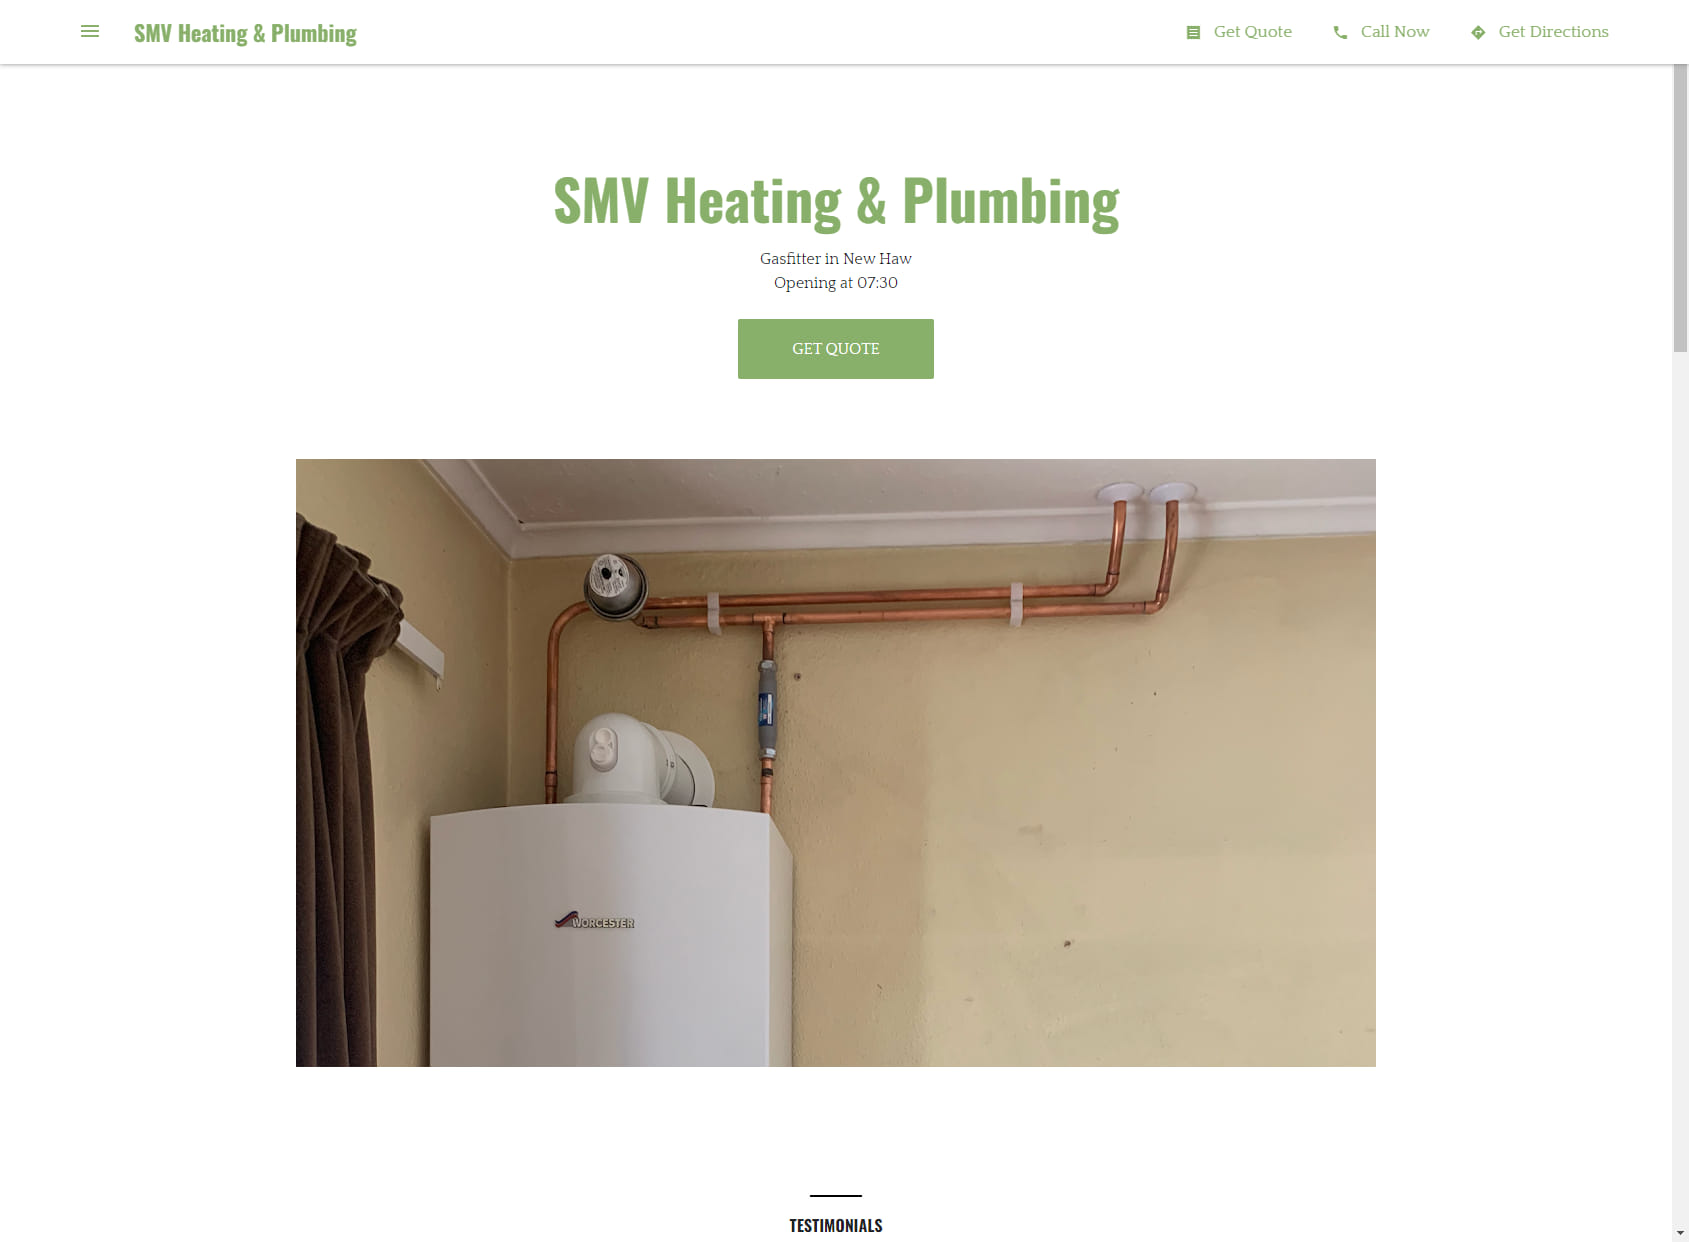 SMV Heating & Plumbing